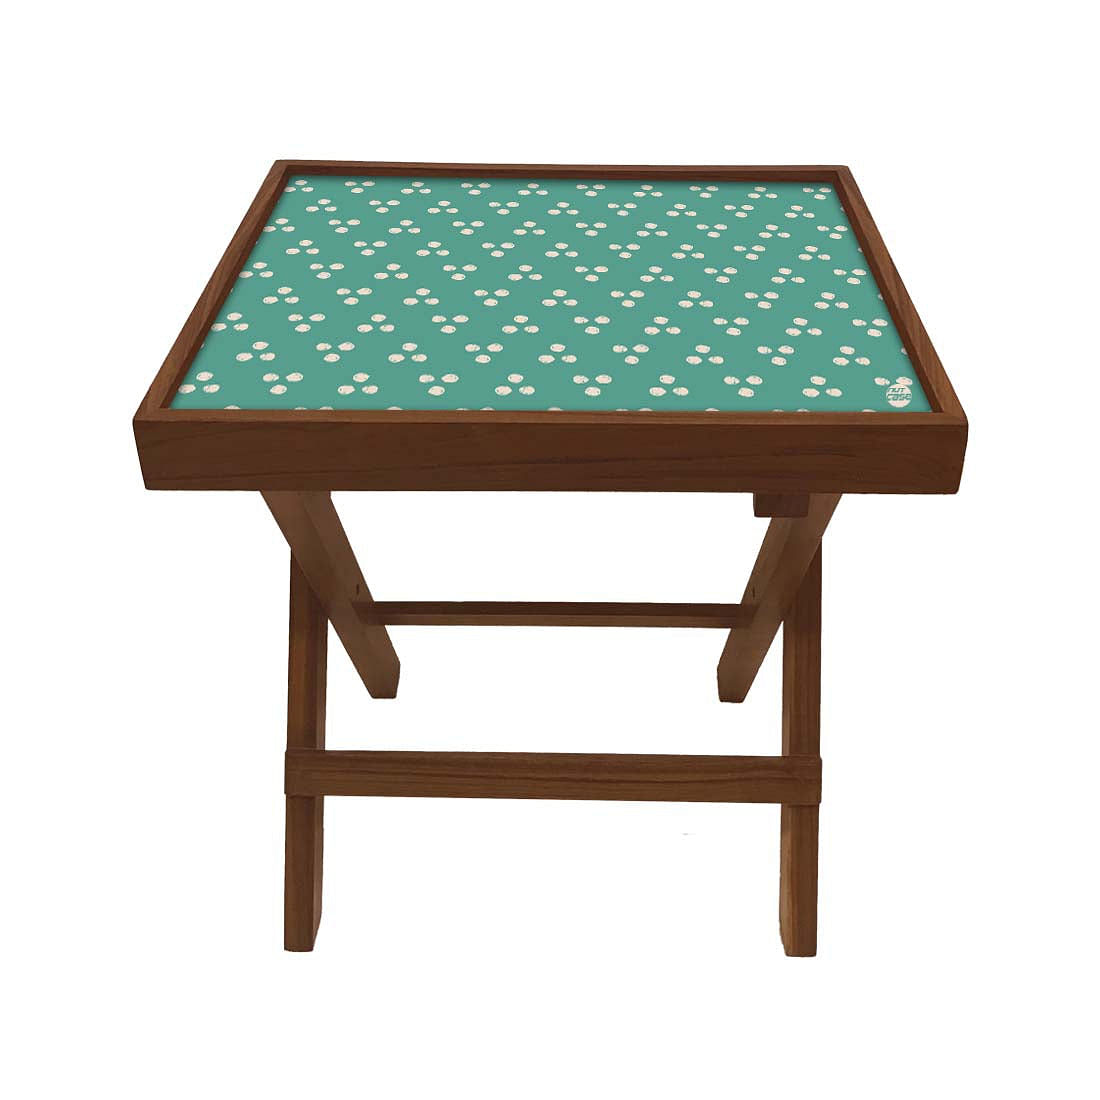 Folding Side Table - Teak Wood -Teal Triangle Nutcase